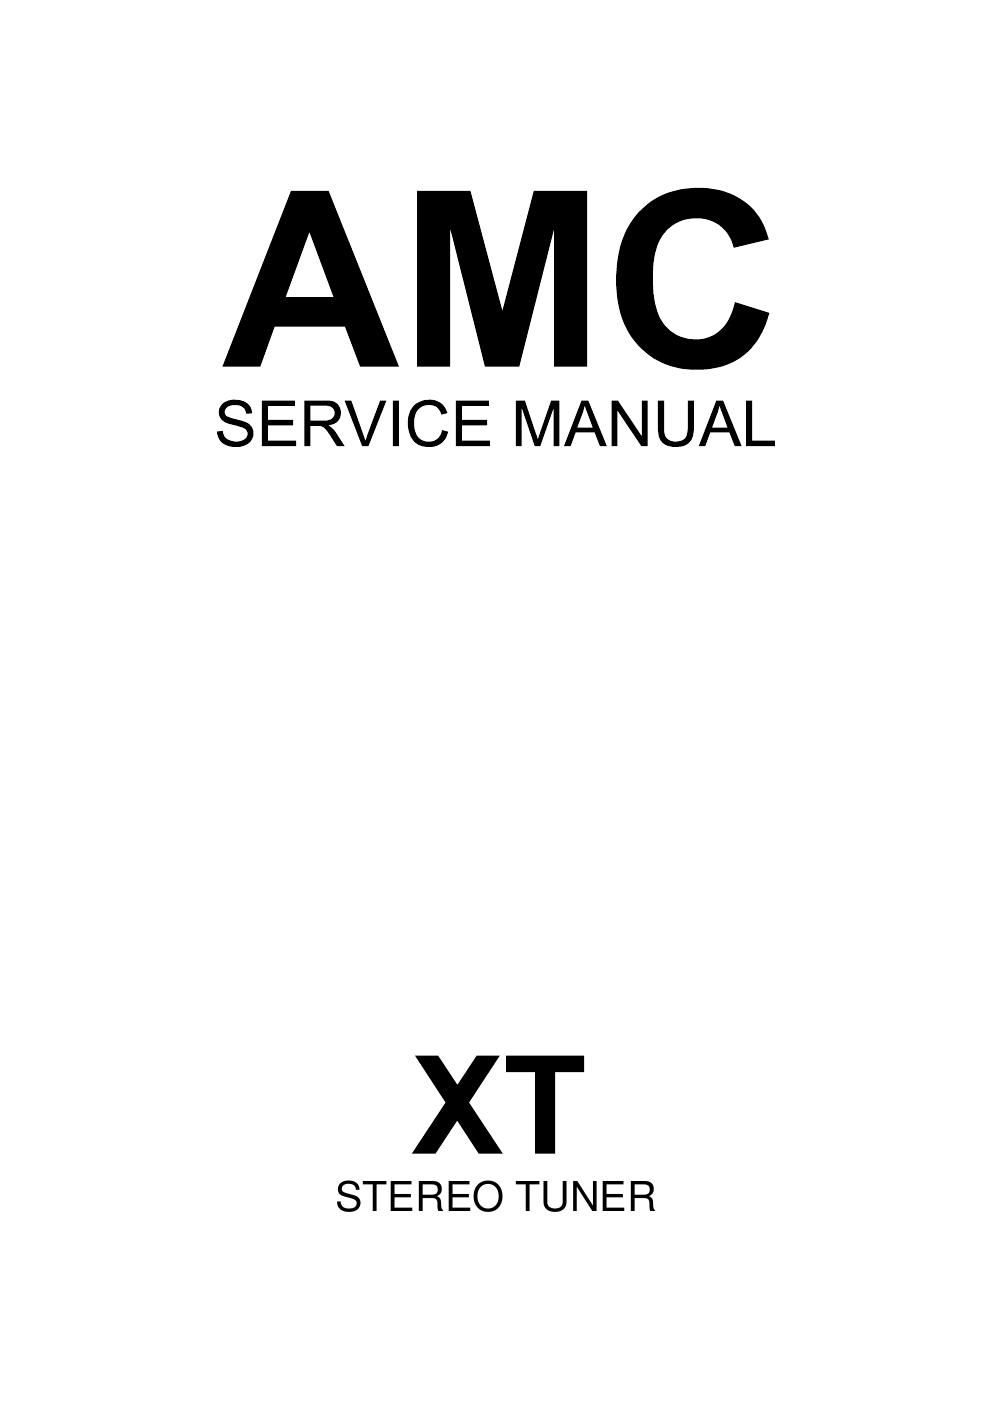 Amc XT tun service manual